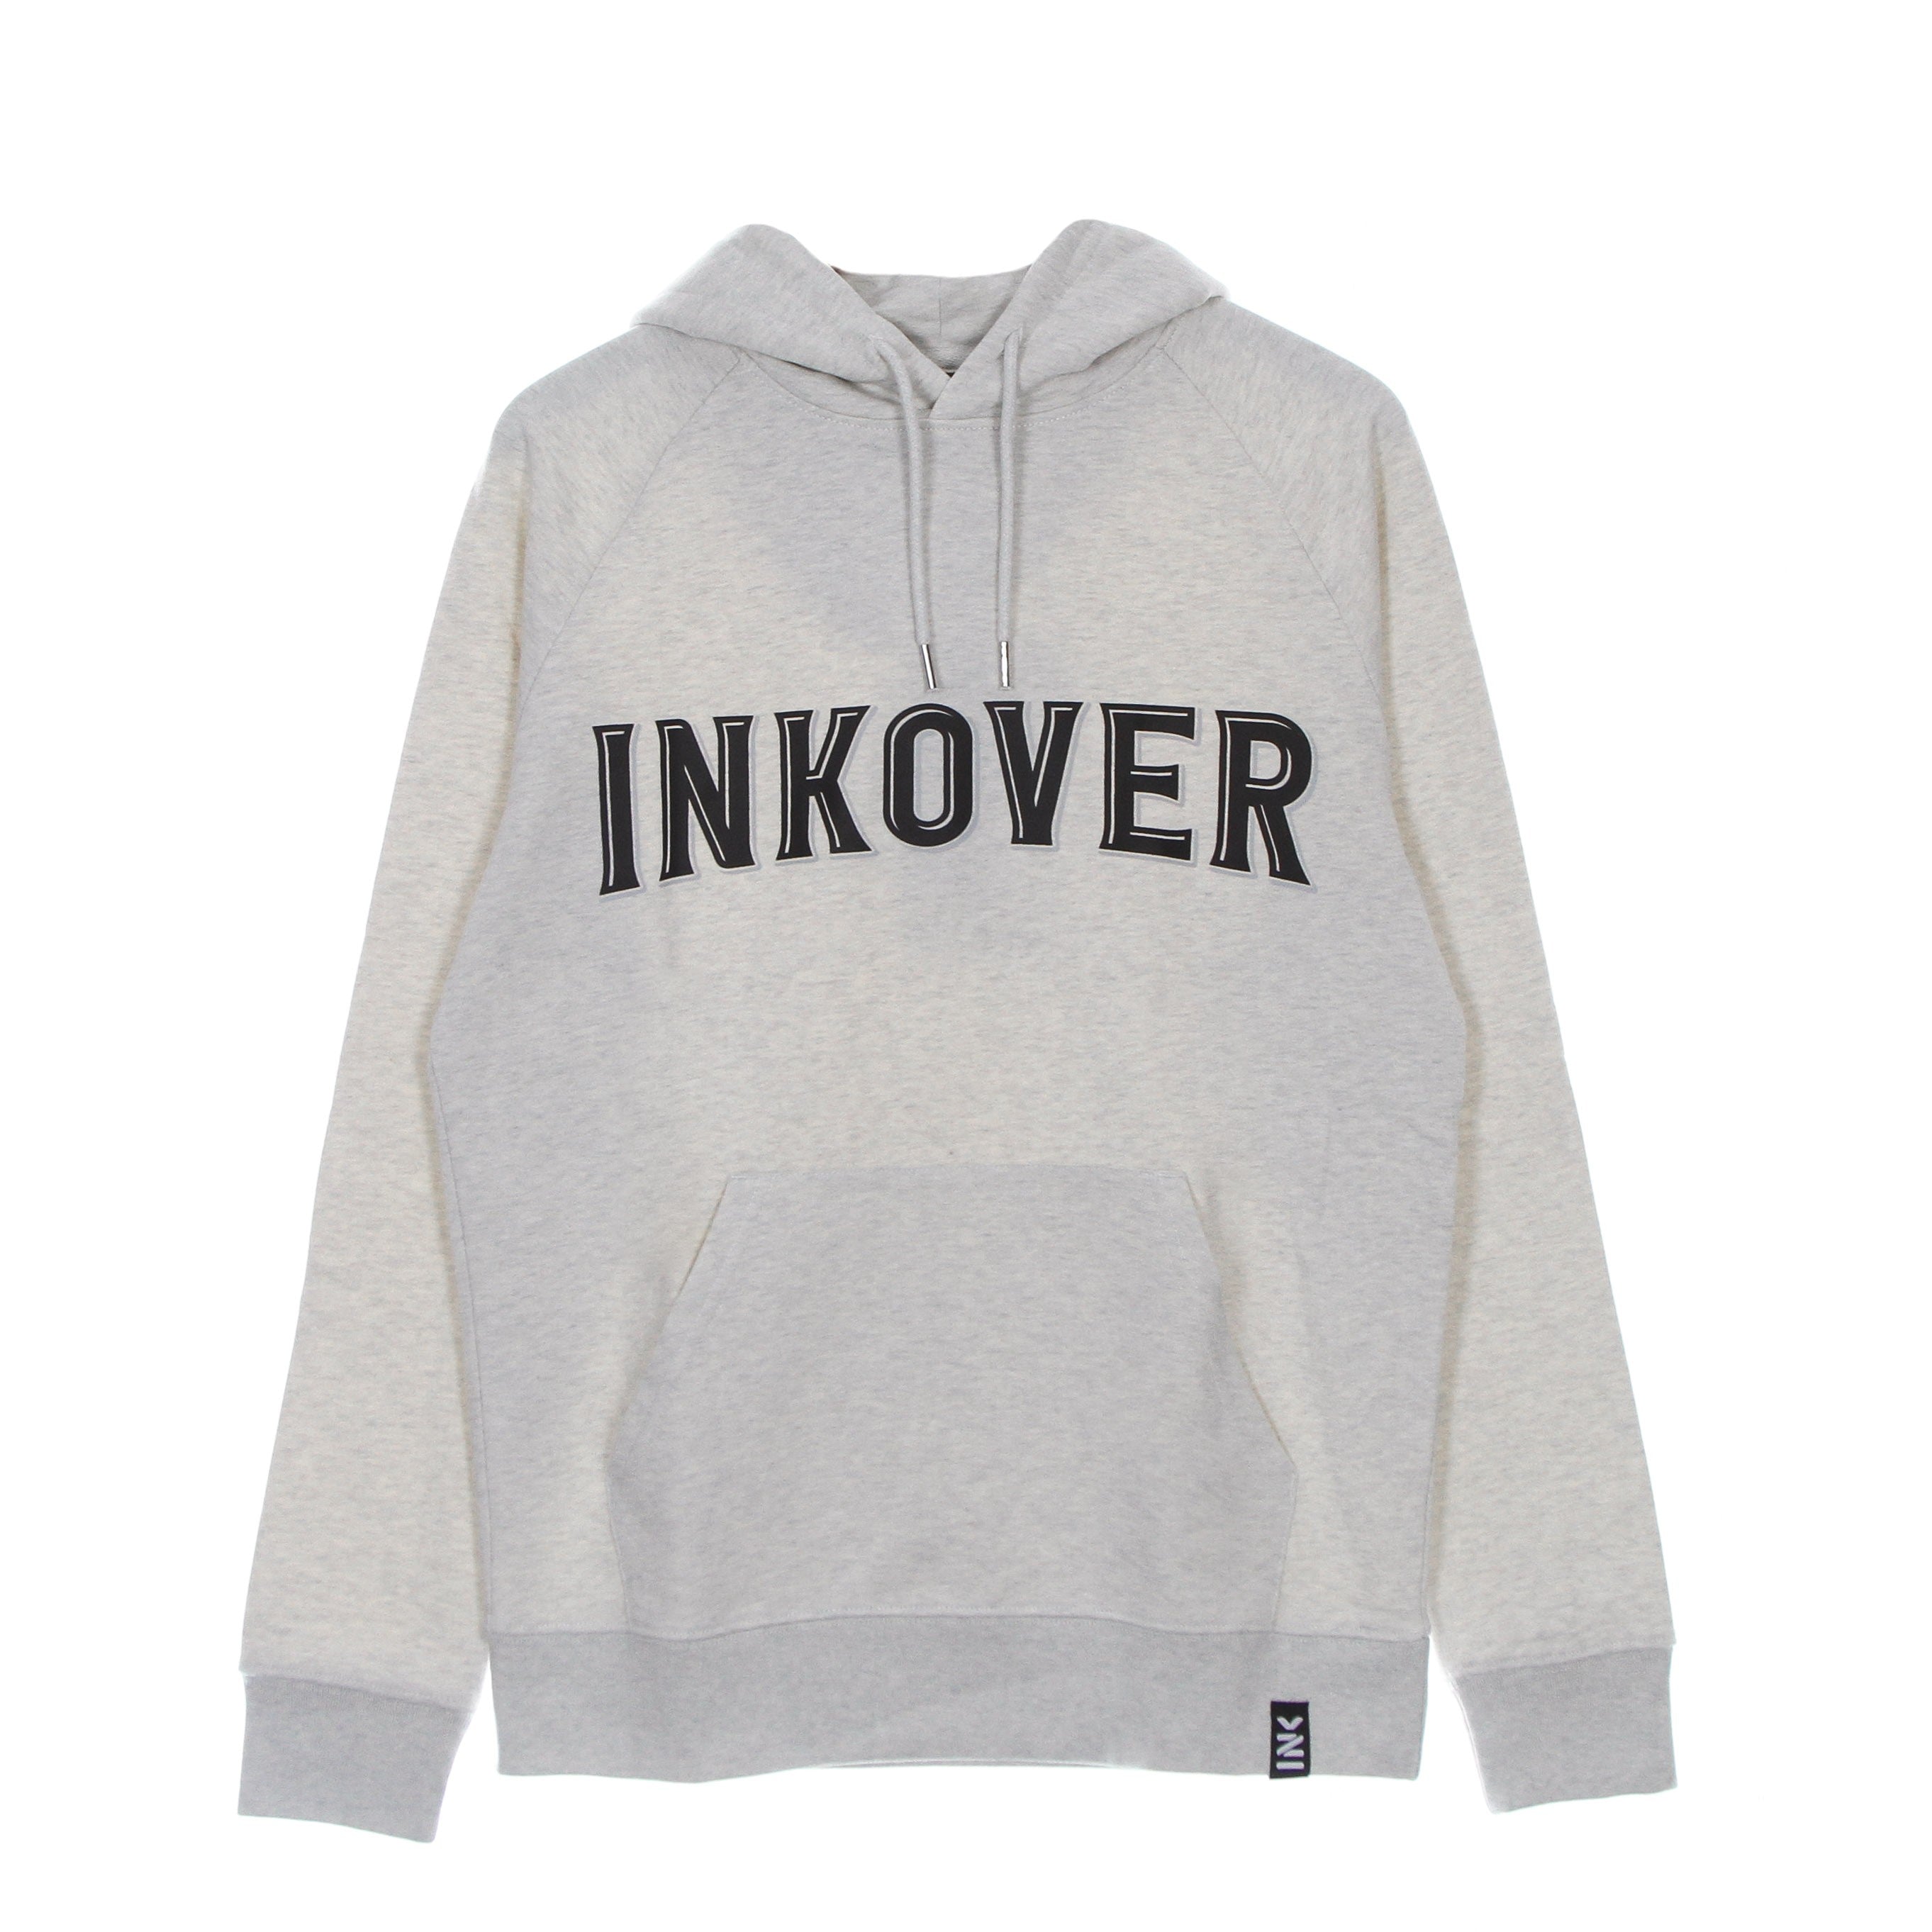 Inkover H2 Men's Lightweight Hooded Sweatshirt